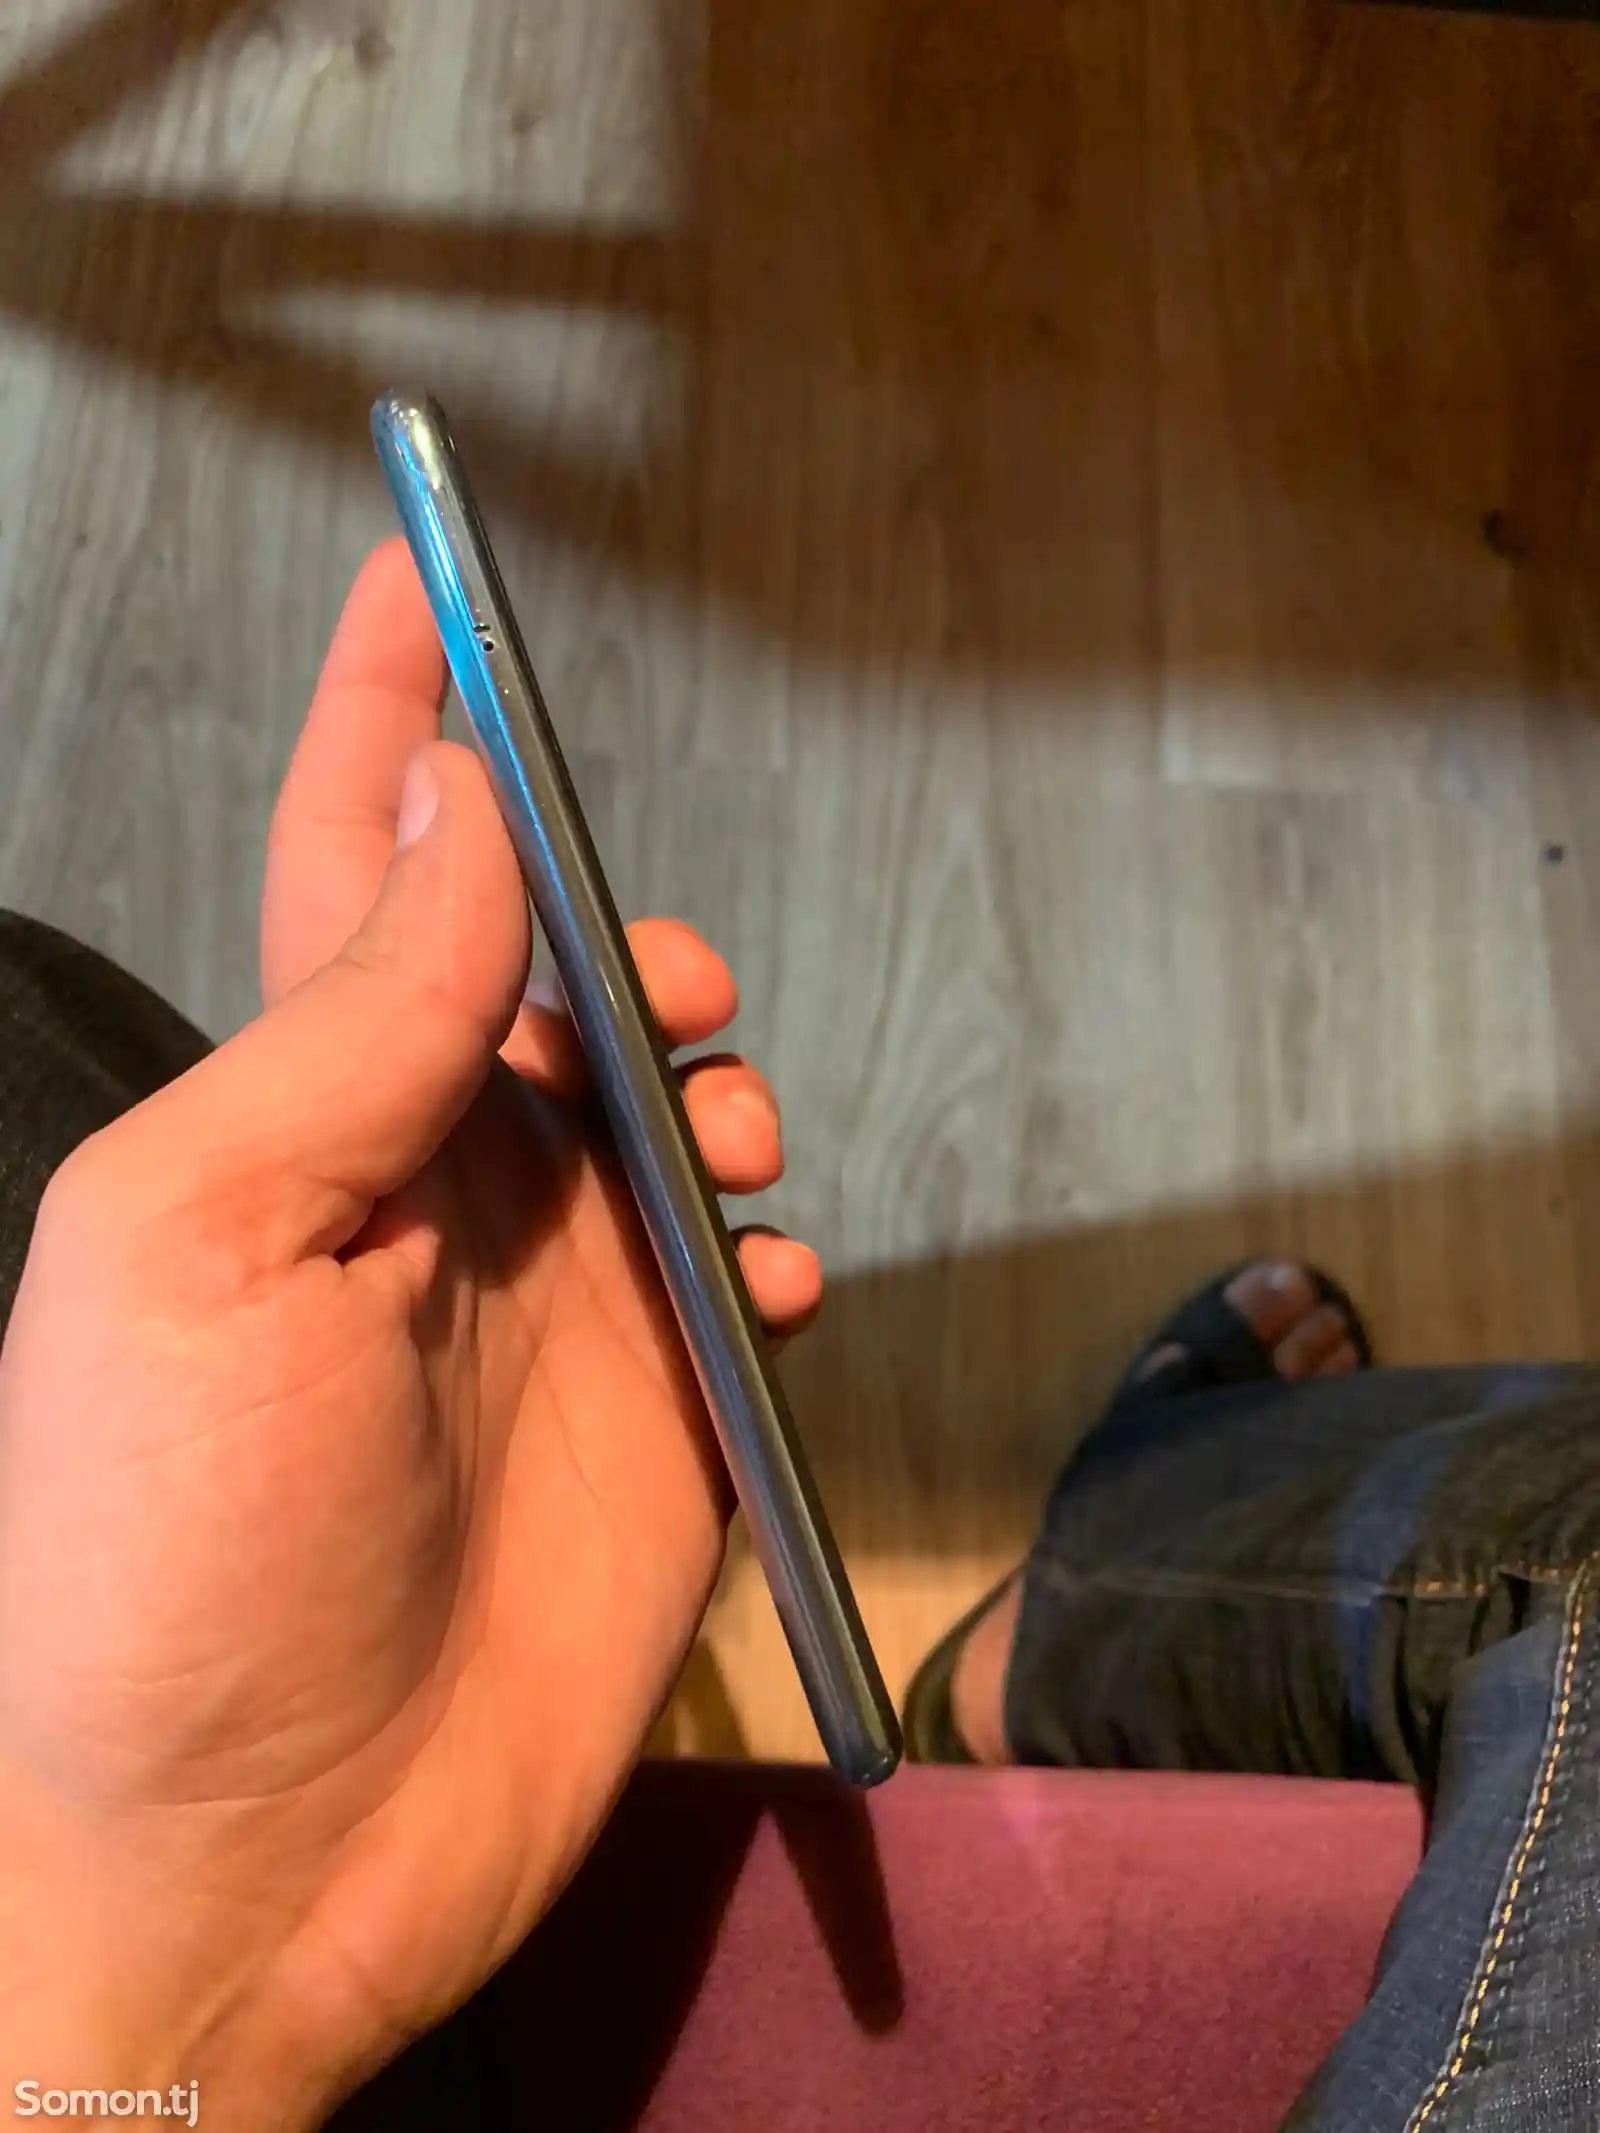 Xiaomi Redmi note 10s-4